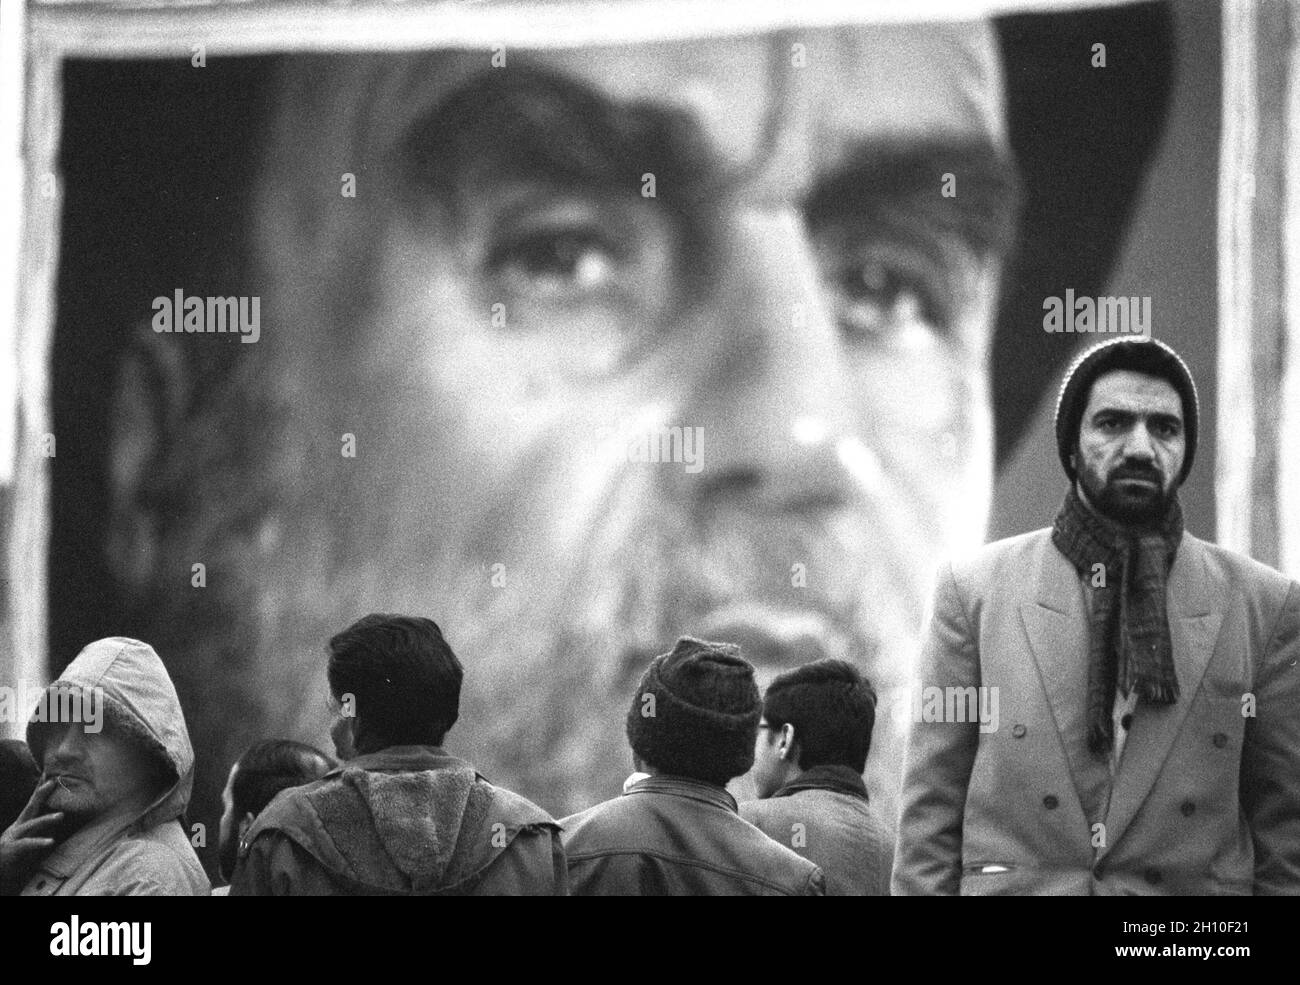 Menschen, die sich für die Hilfe al Fetr versammelten, beteten vor einem großen Plakat von Ayatollah Roohollah Komeini, dem Führer der Islamischen Revolution von 1979, die das Königreich Pahlavi regim in eine Islamische Republik verwandelte. Teheran Hauptstadt. Stockfoto